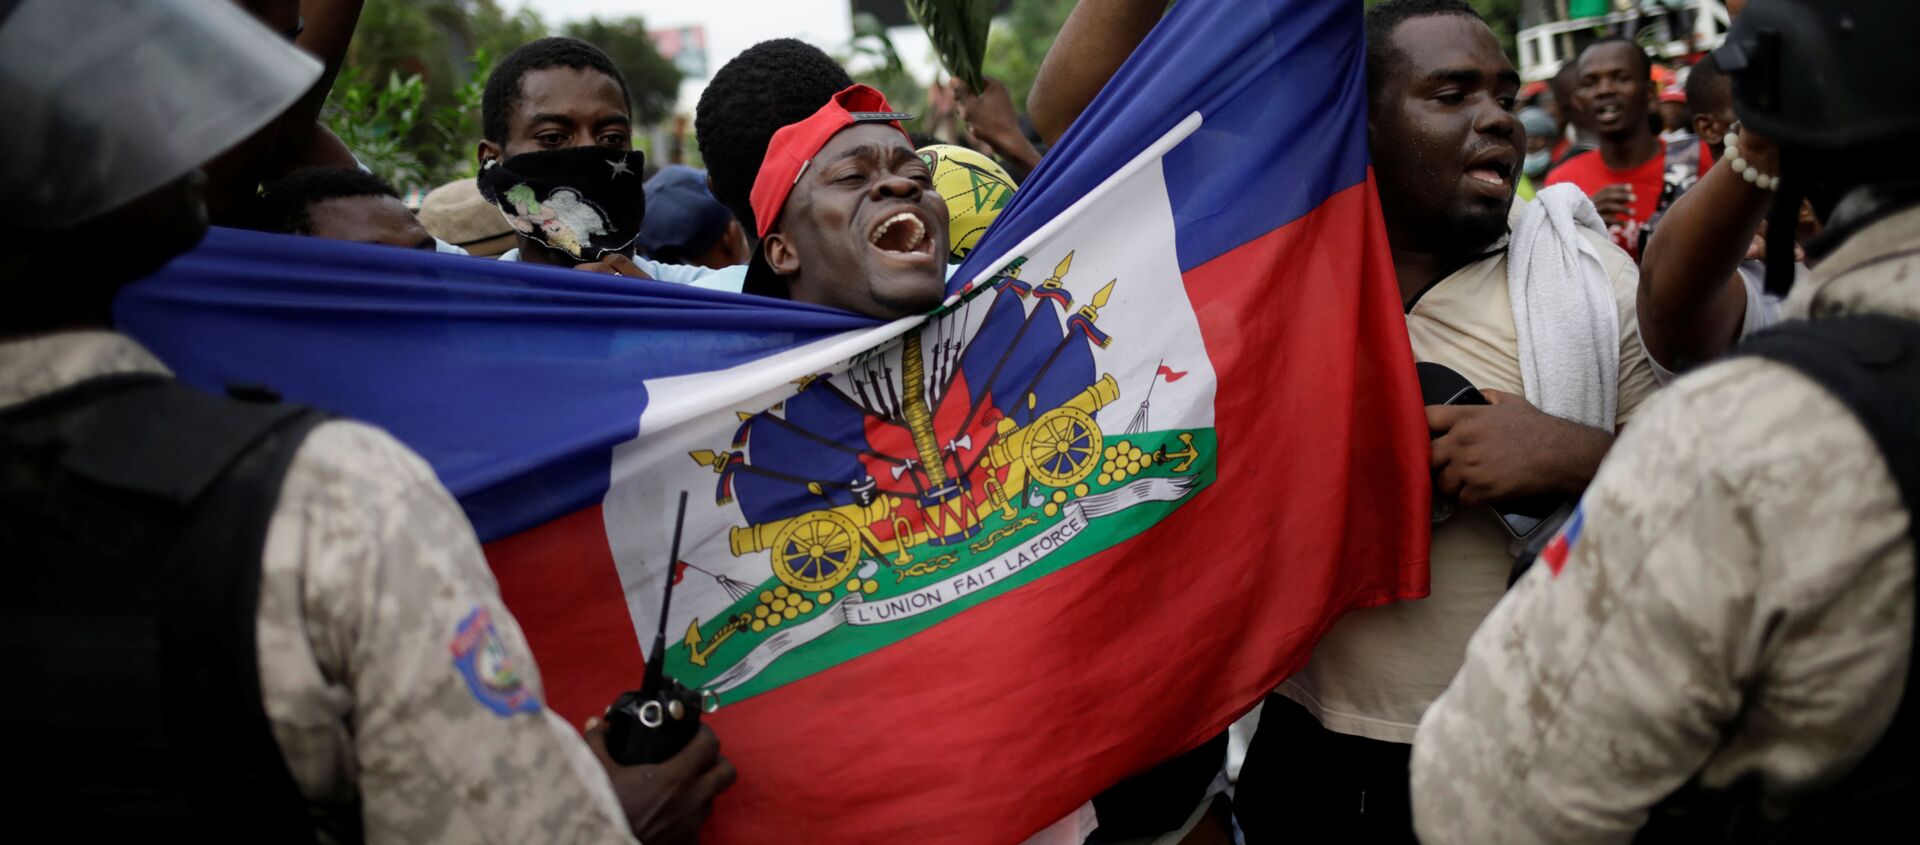 Protestas en Haití - Sputnik Mundo, 1920, 08.11.2019